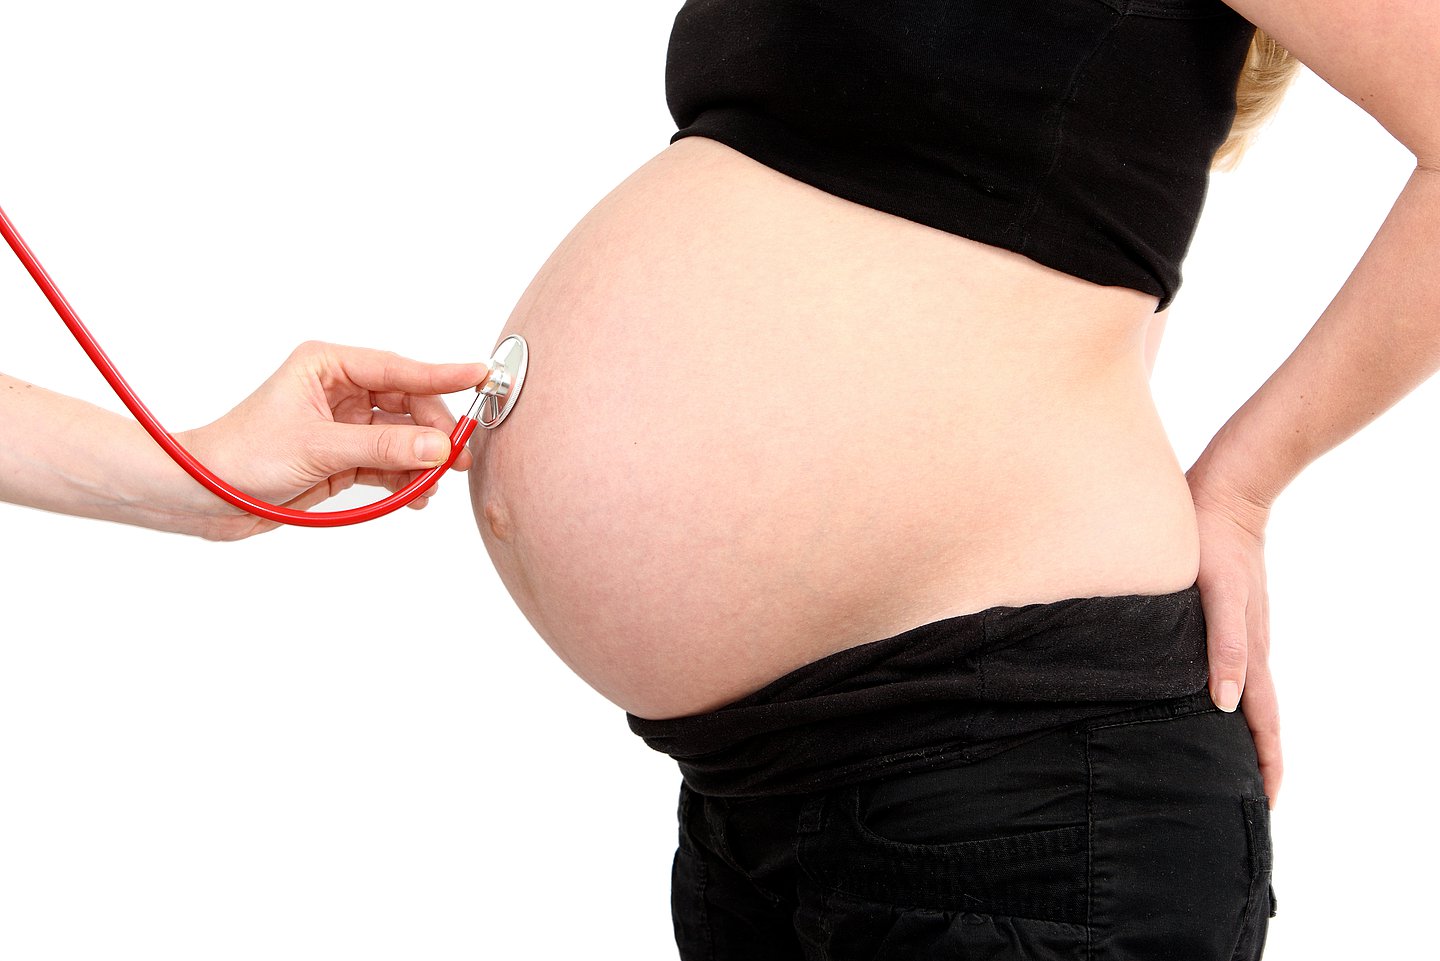 Foto: Eine ärztliche Fachperson untersucht eine schwangere Frau.